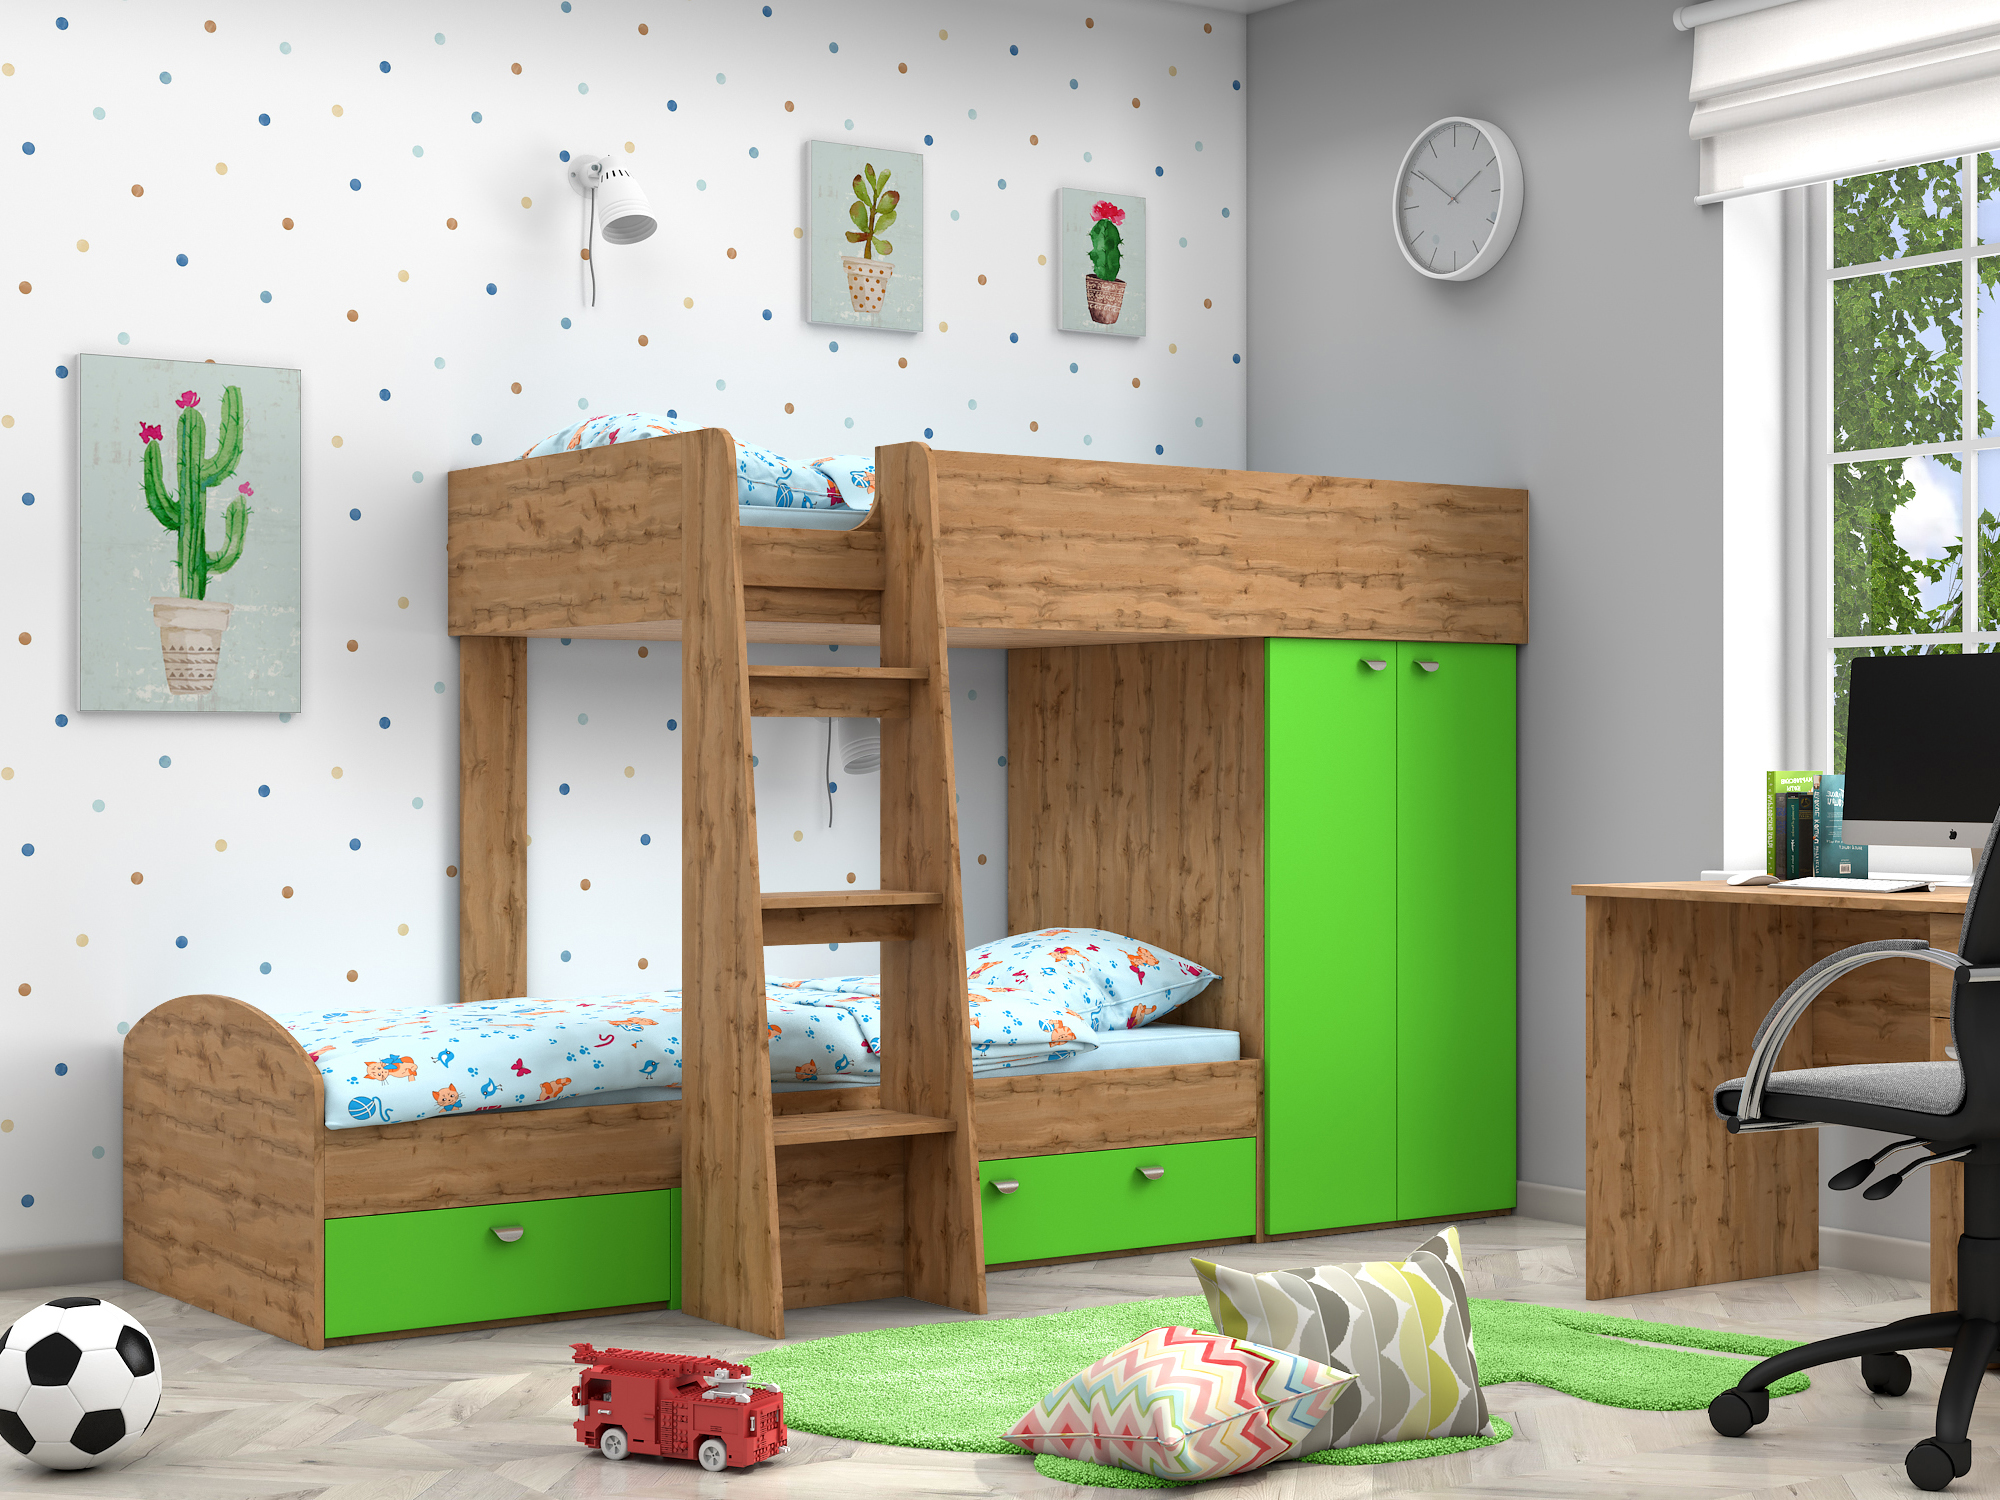 Двухъярусная кровать Golden Kids-2 (90х200) Зеленый, Бежевый, ЛДСП двухъярусная кровать golden kids 2 90х200 венге коричневый темный лдсп